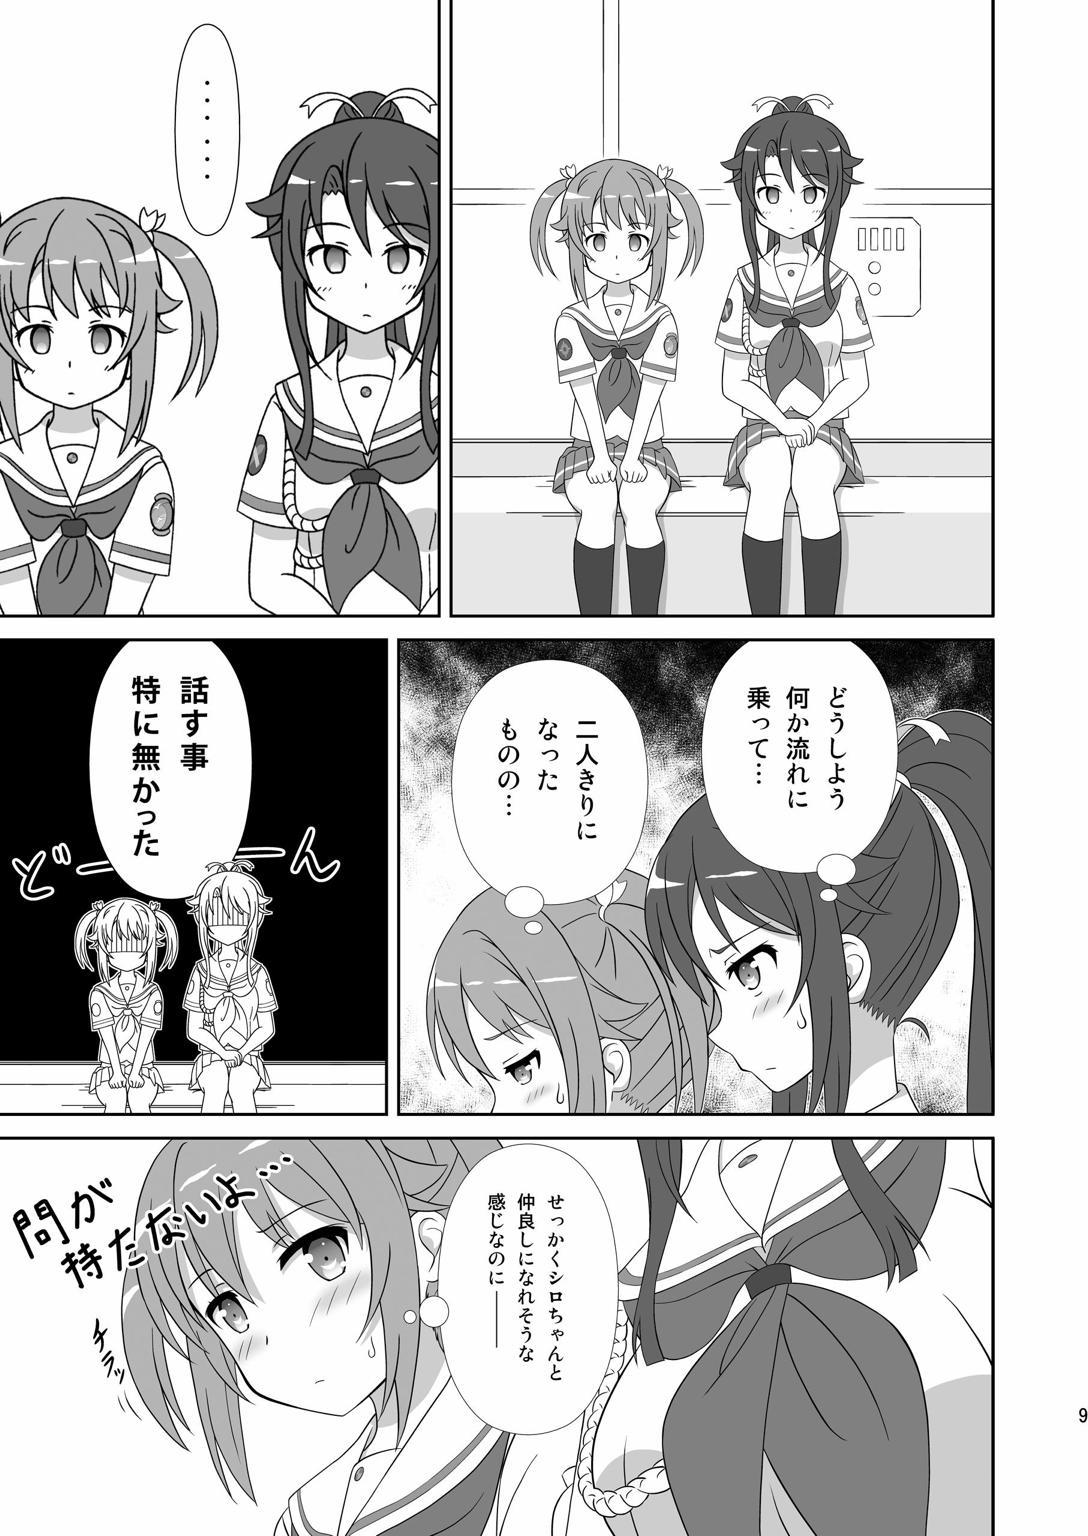 Swinger Souya x Misaki - High school fleet Secretary - Page 8